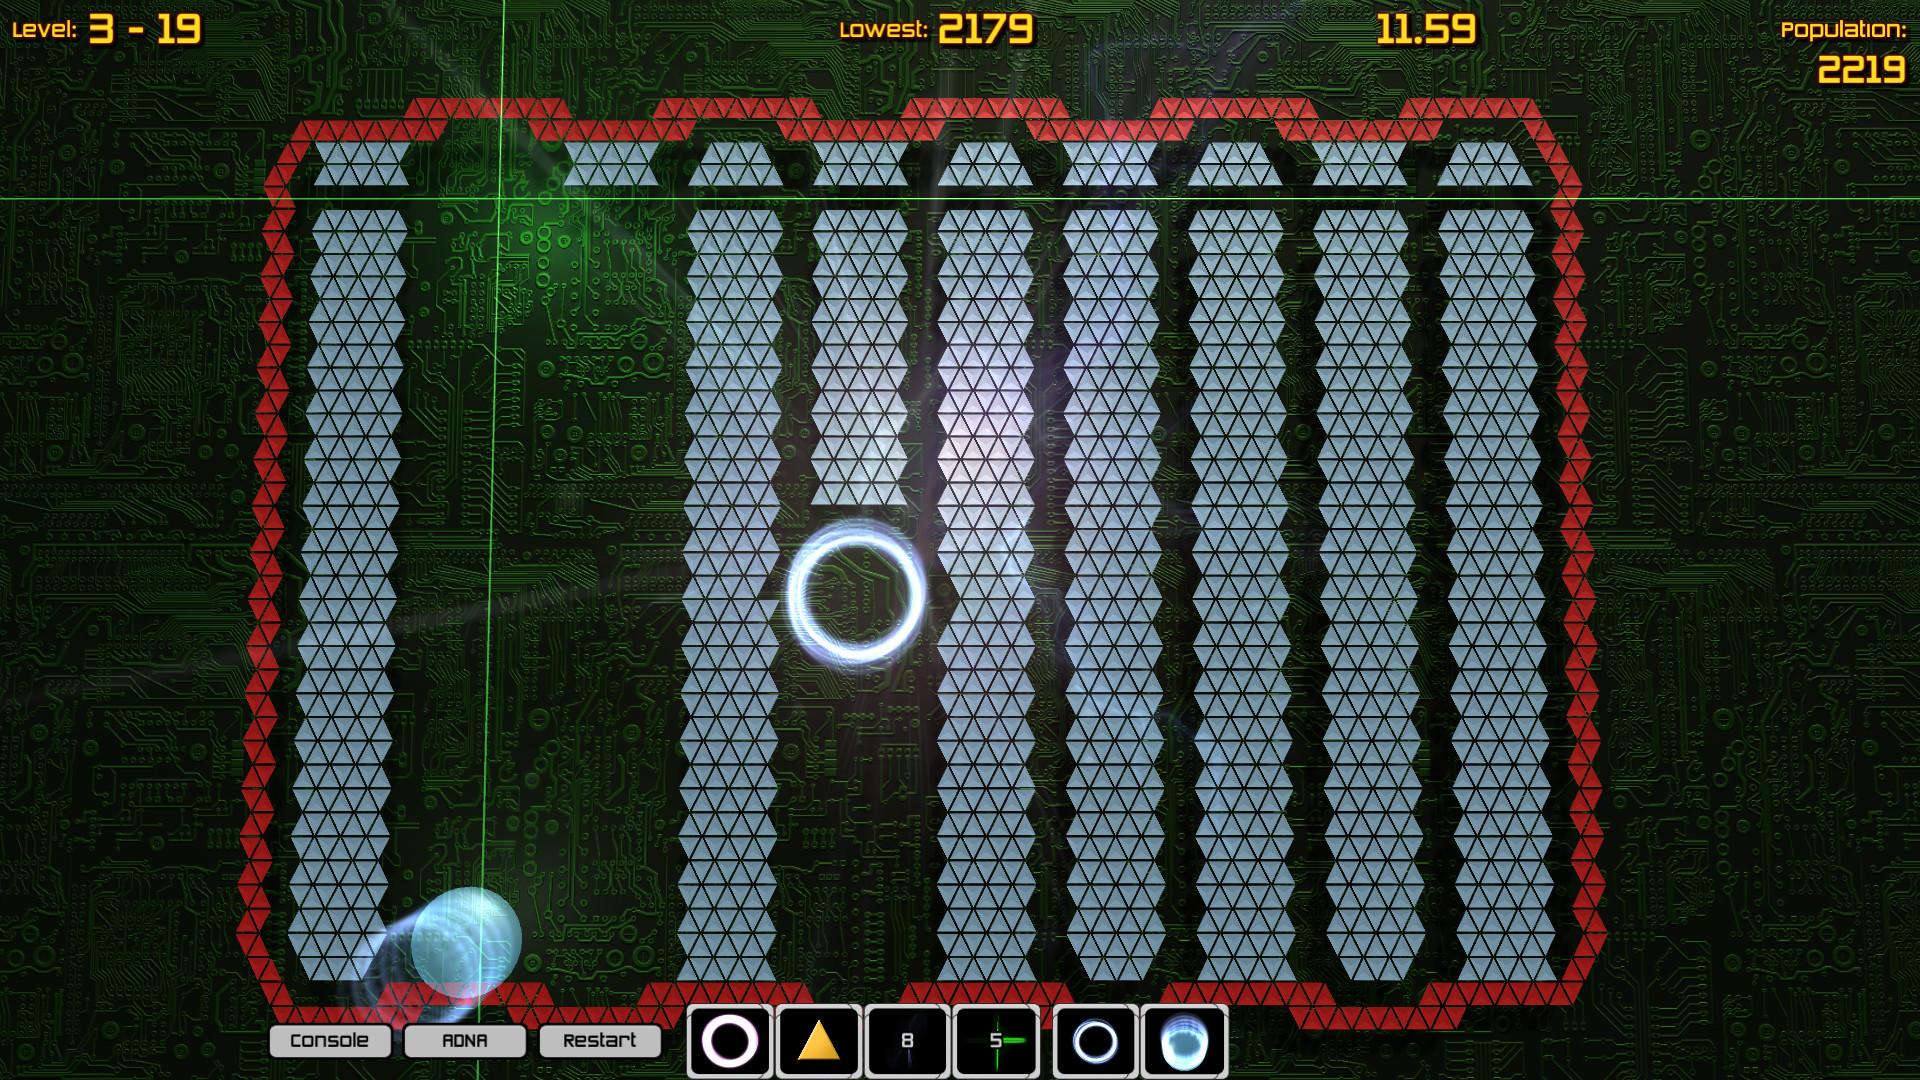 Screenshot №4 from game Nanobots